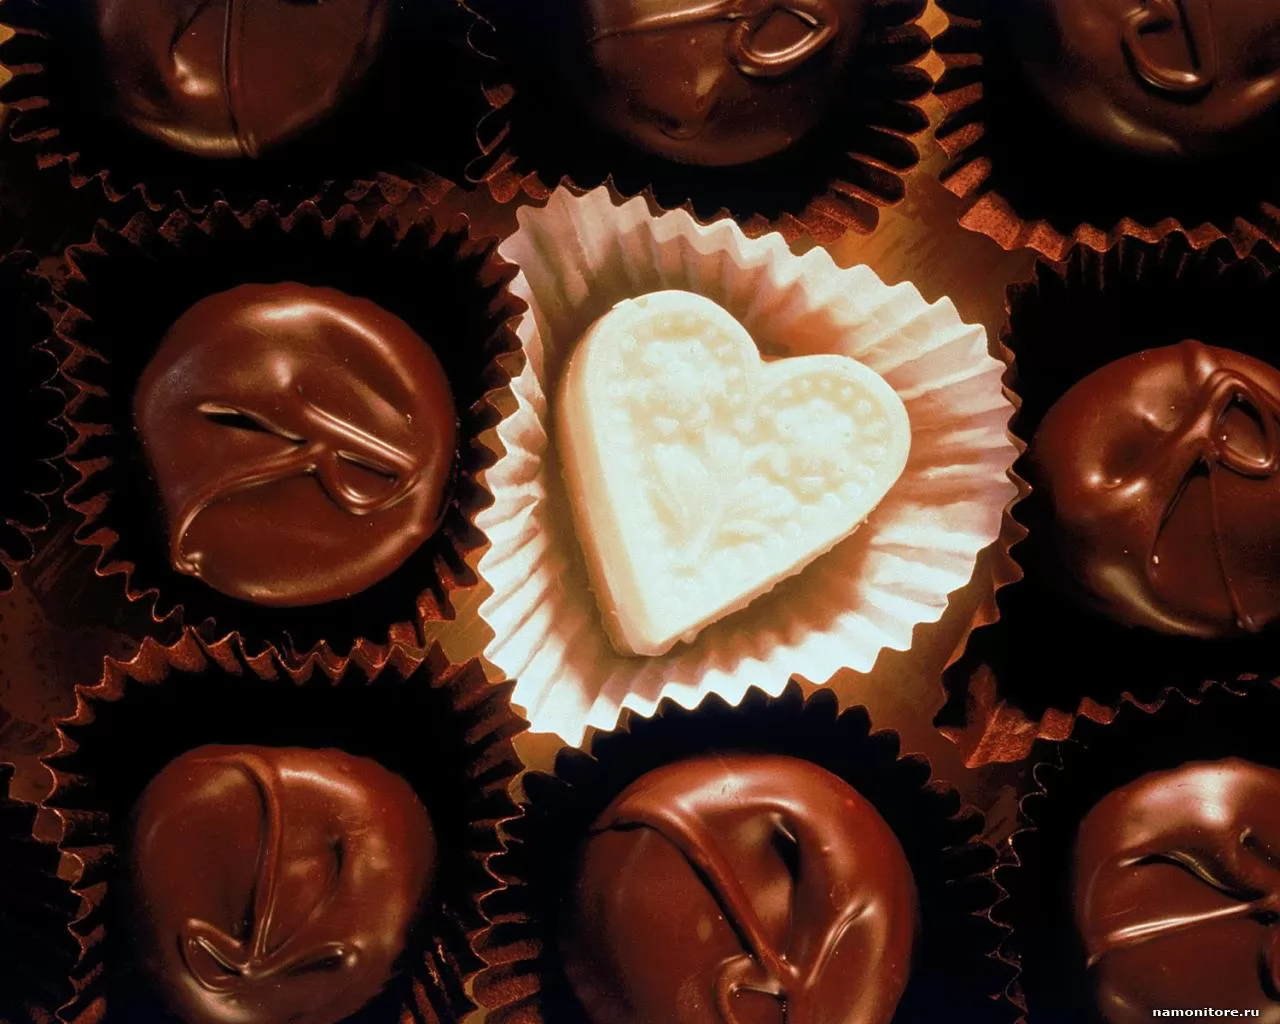 Ощущение сладости. День шоколадных сюрпризов. Всемирный день шоколада. Шоколадный сюрприз. Люди не шоколадные конфеты.